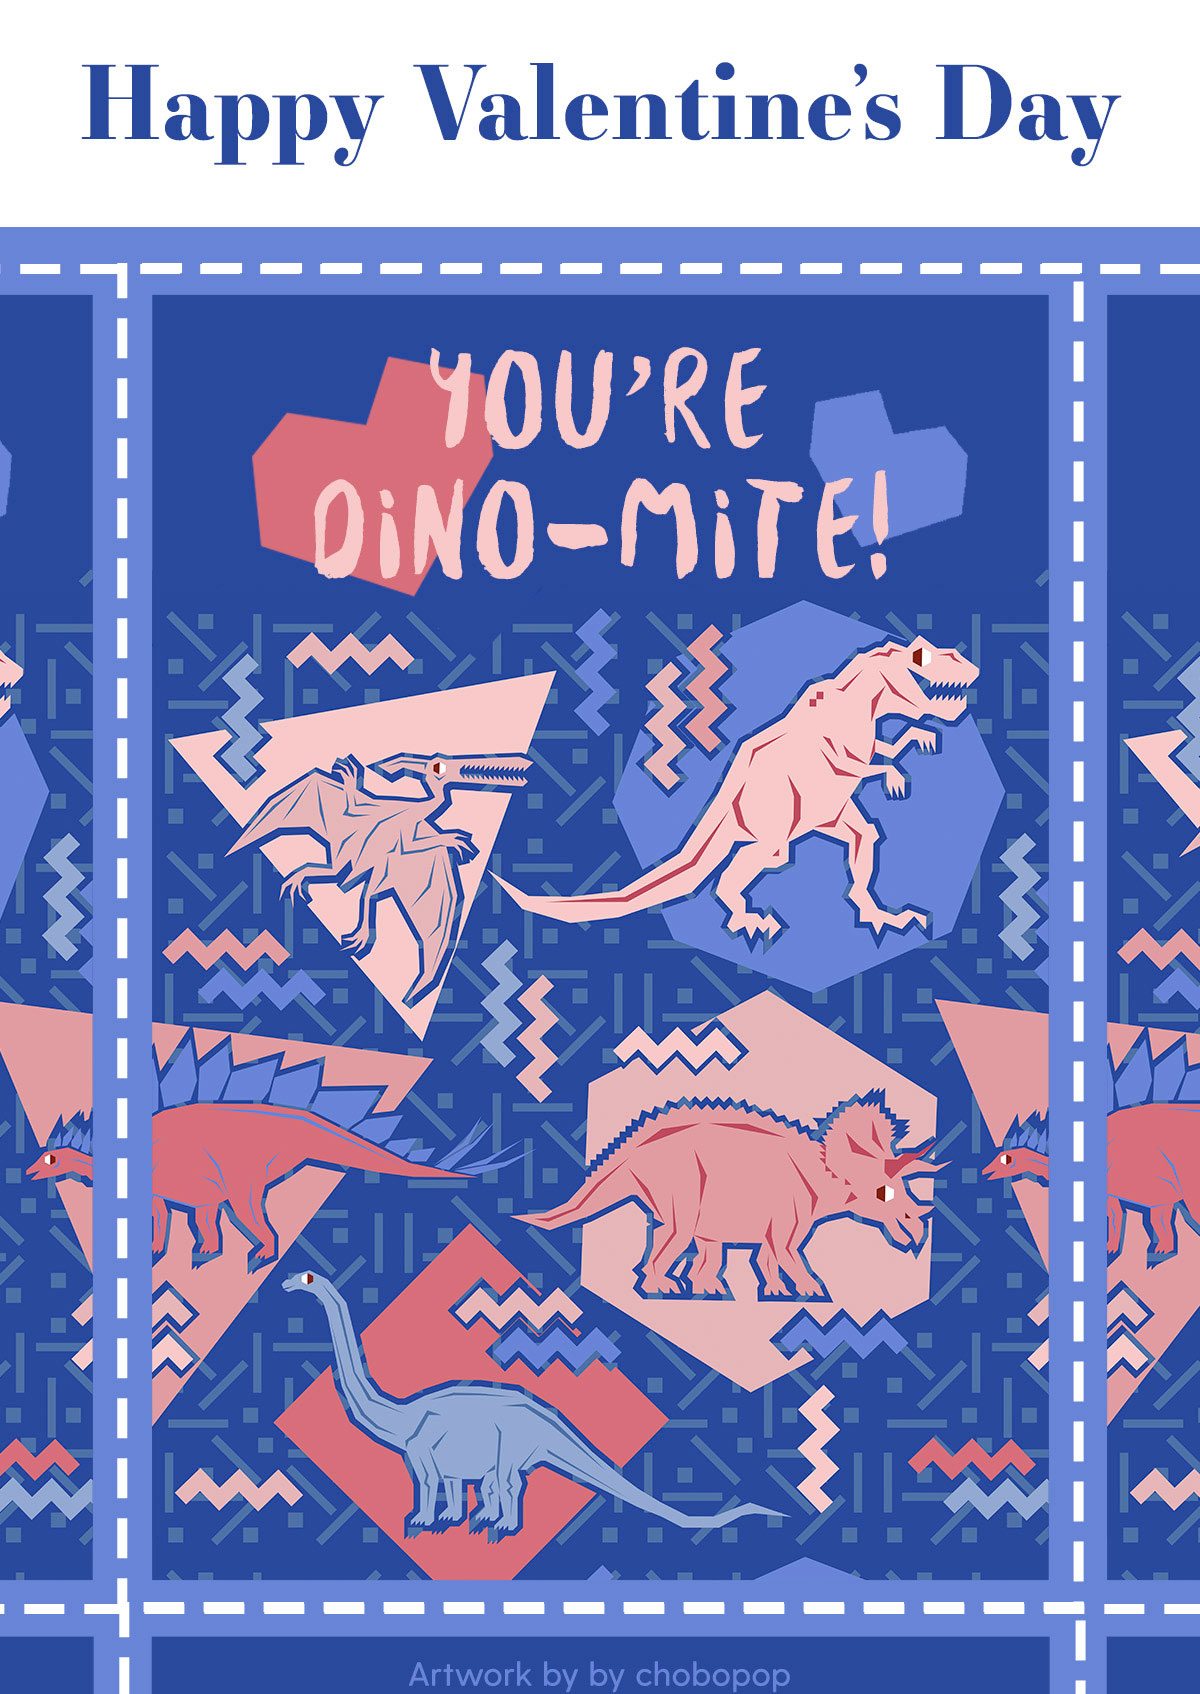 You're Dino-mite! Artwork by chobopop